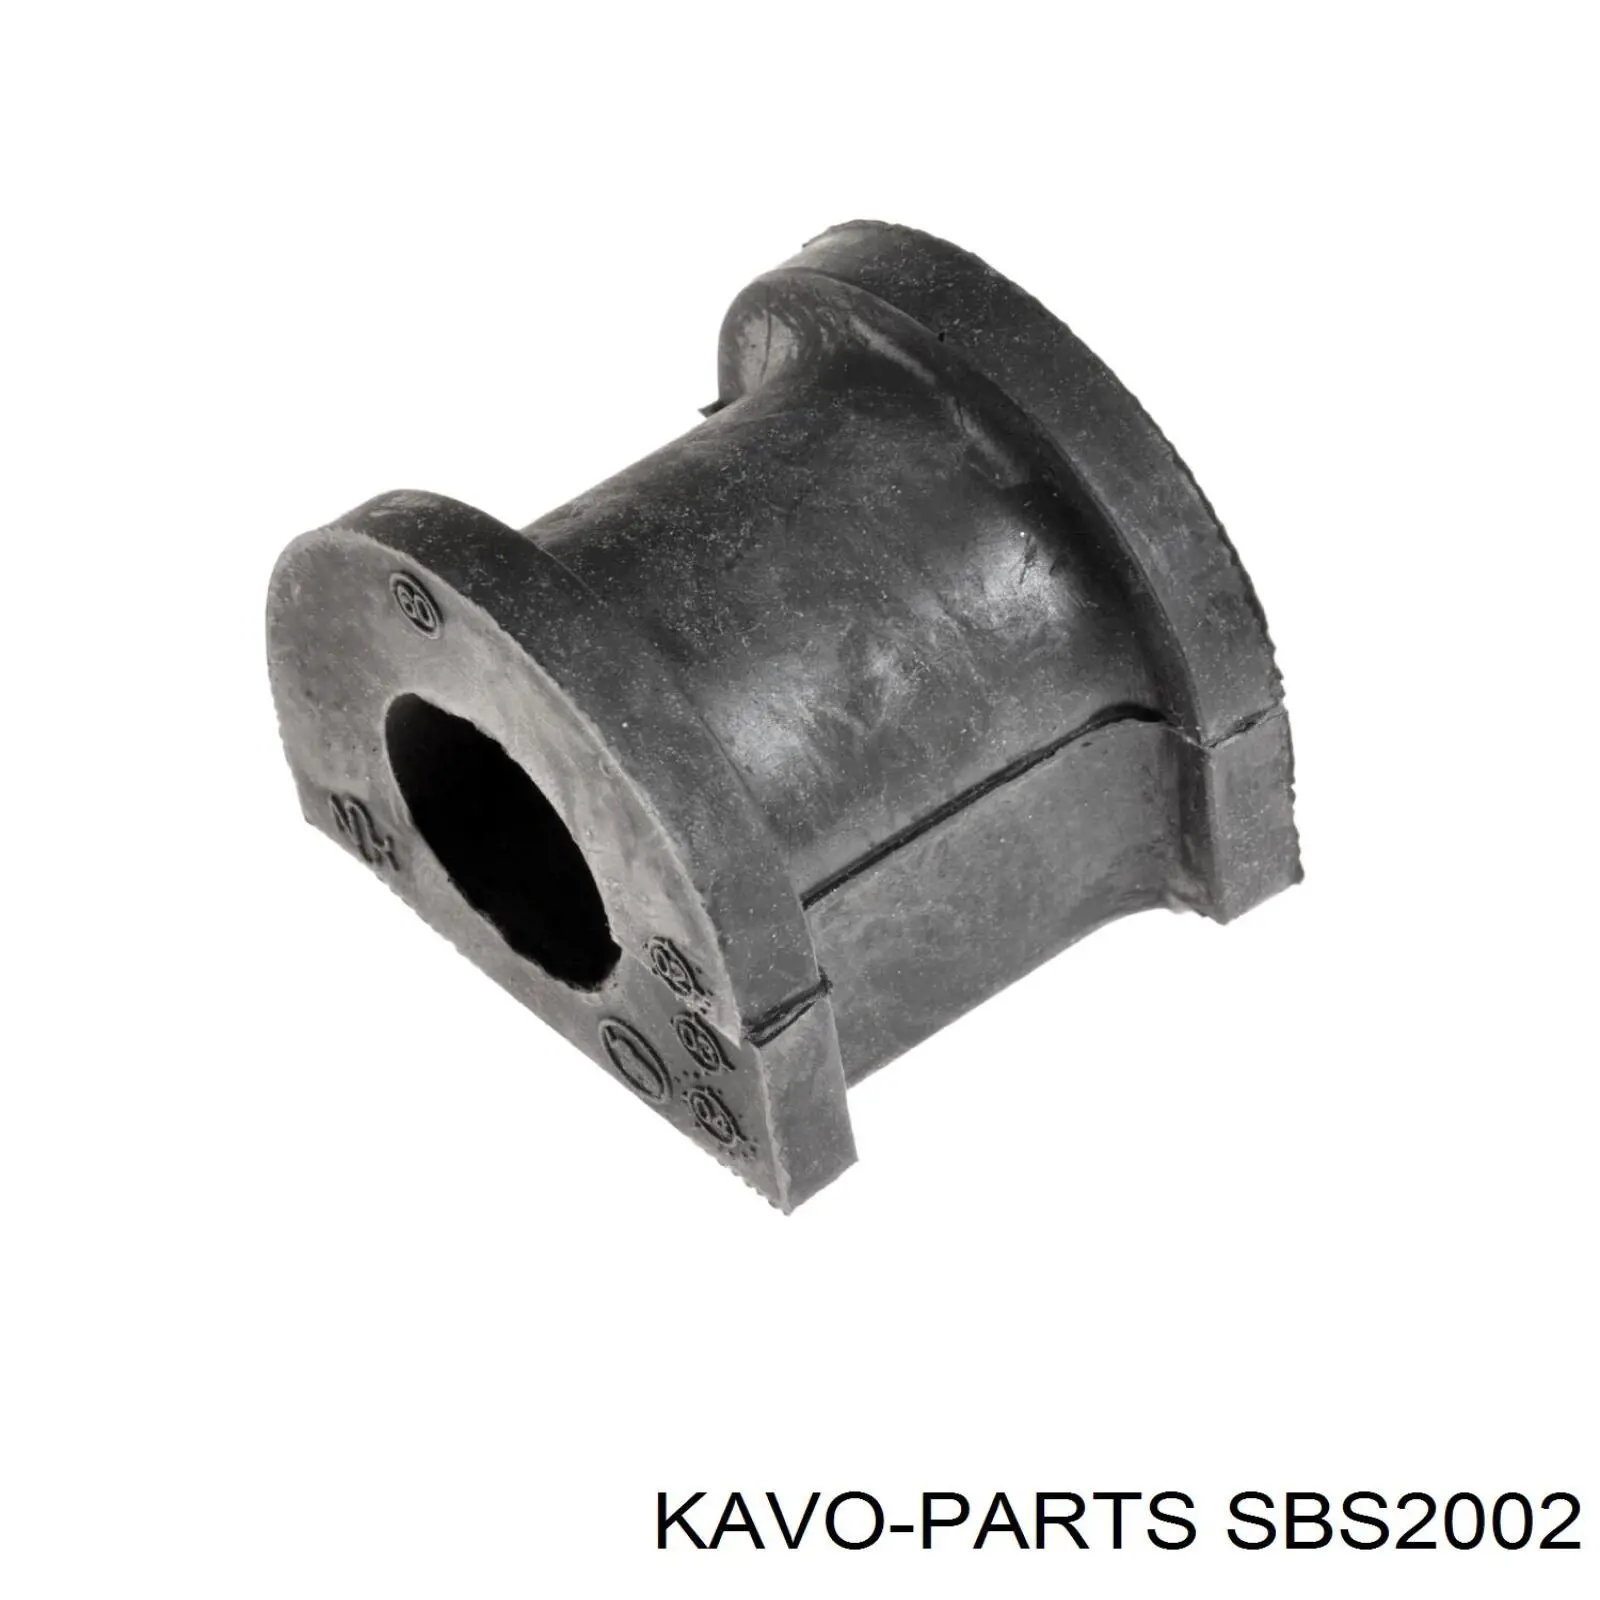 SBS-2002 Kavo Parts casquillo de barra estabilizadora delantera